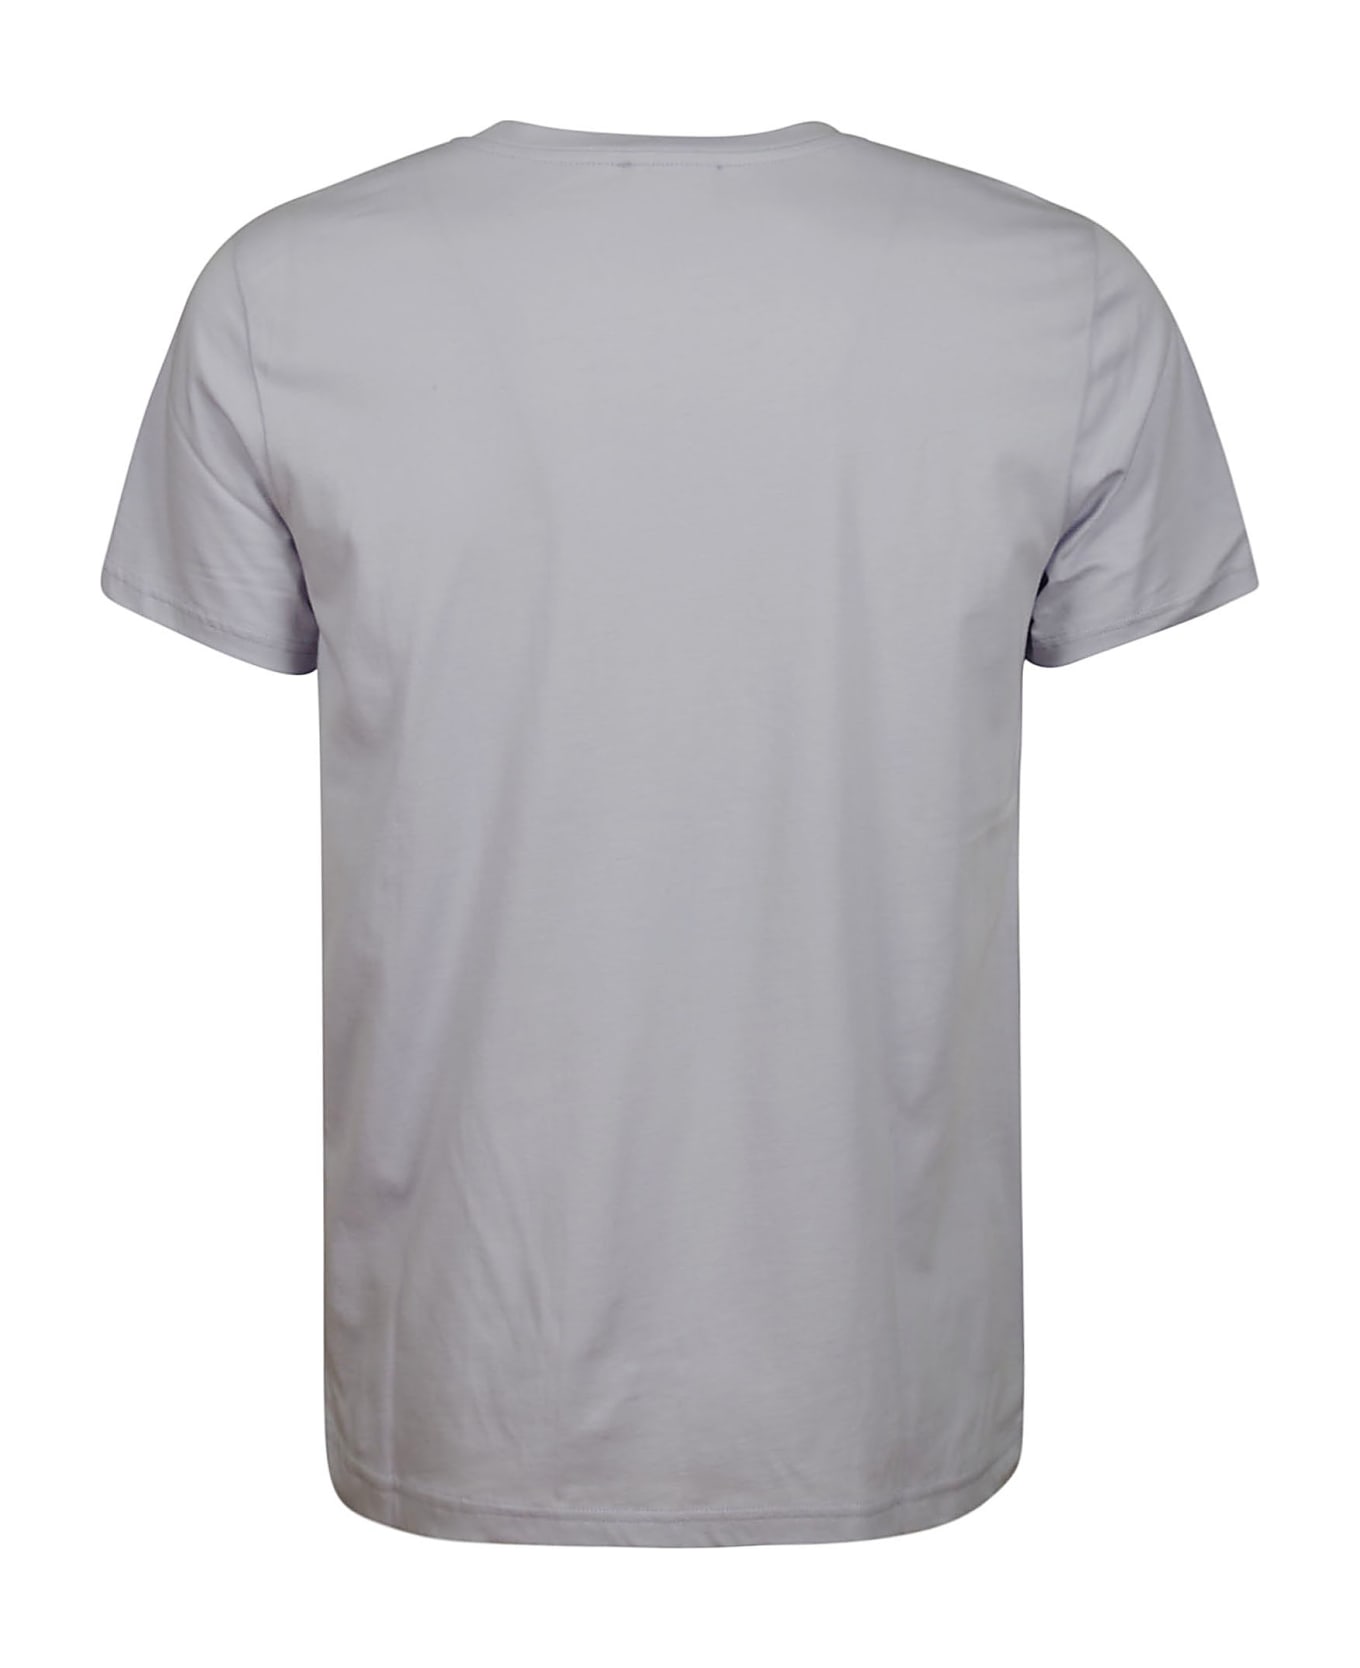 A.P.C. T-shirt Item - Haf Parma シャツ